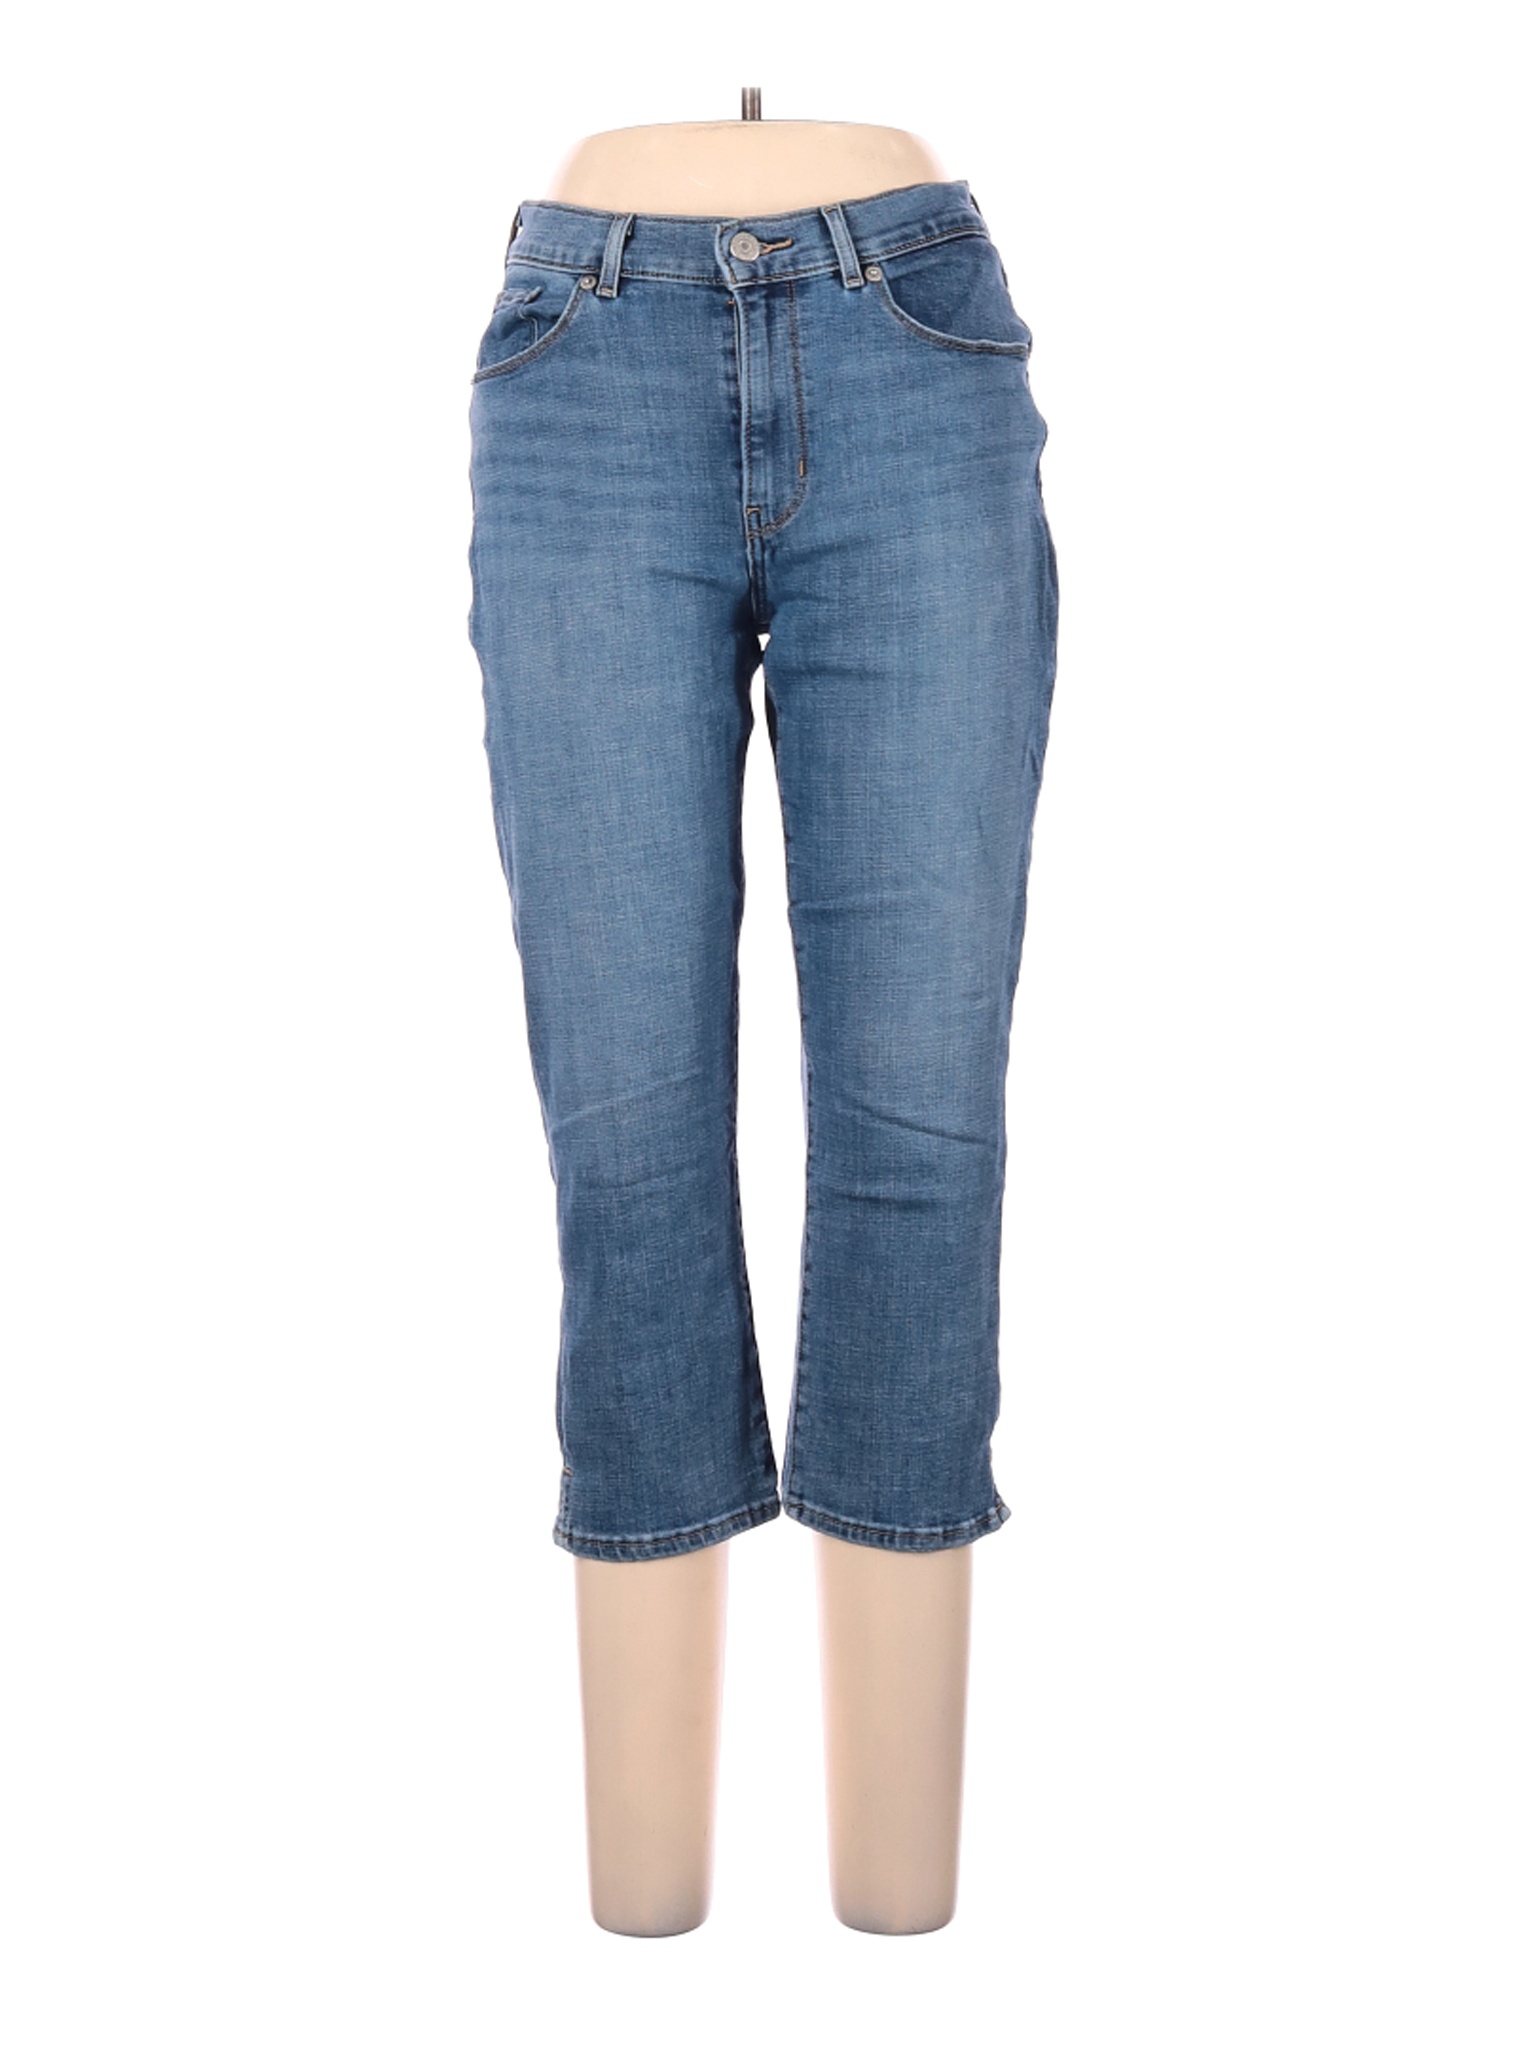 Levi's Women Blue Jeans 10 | eBay